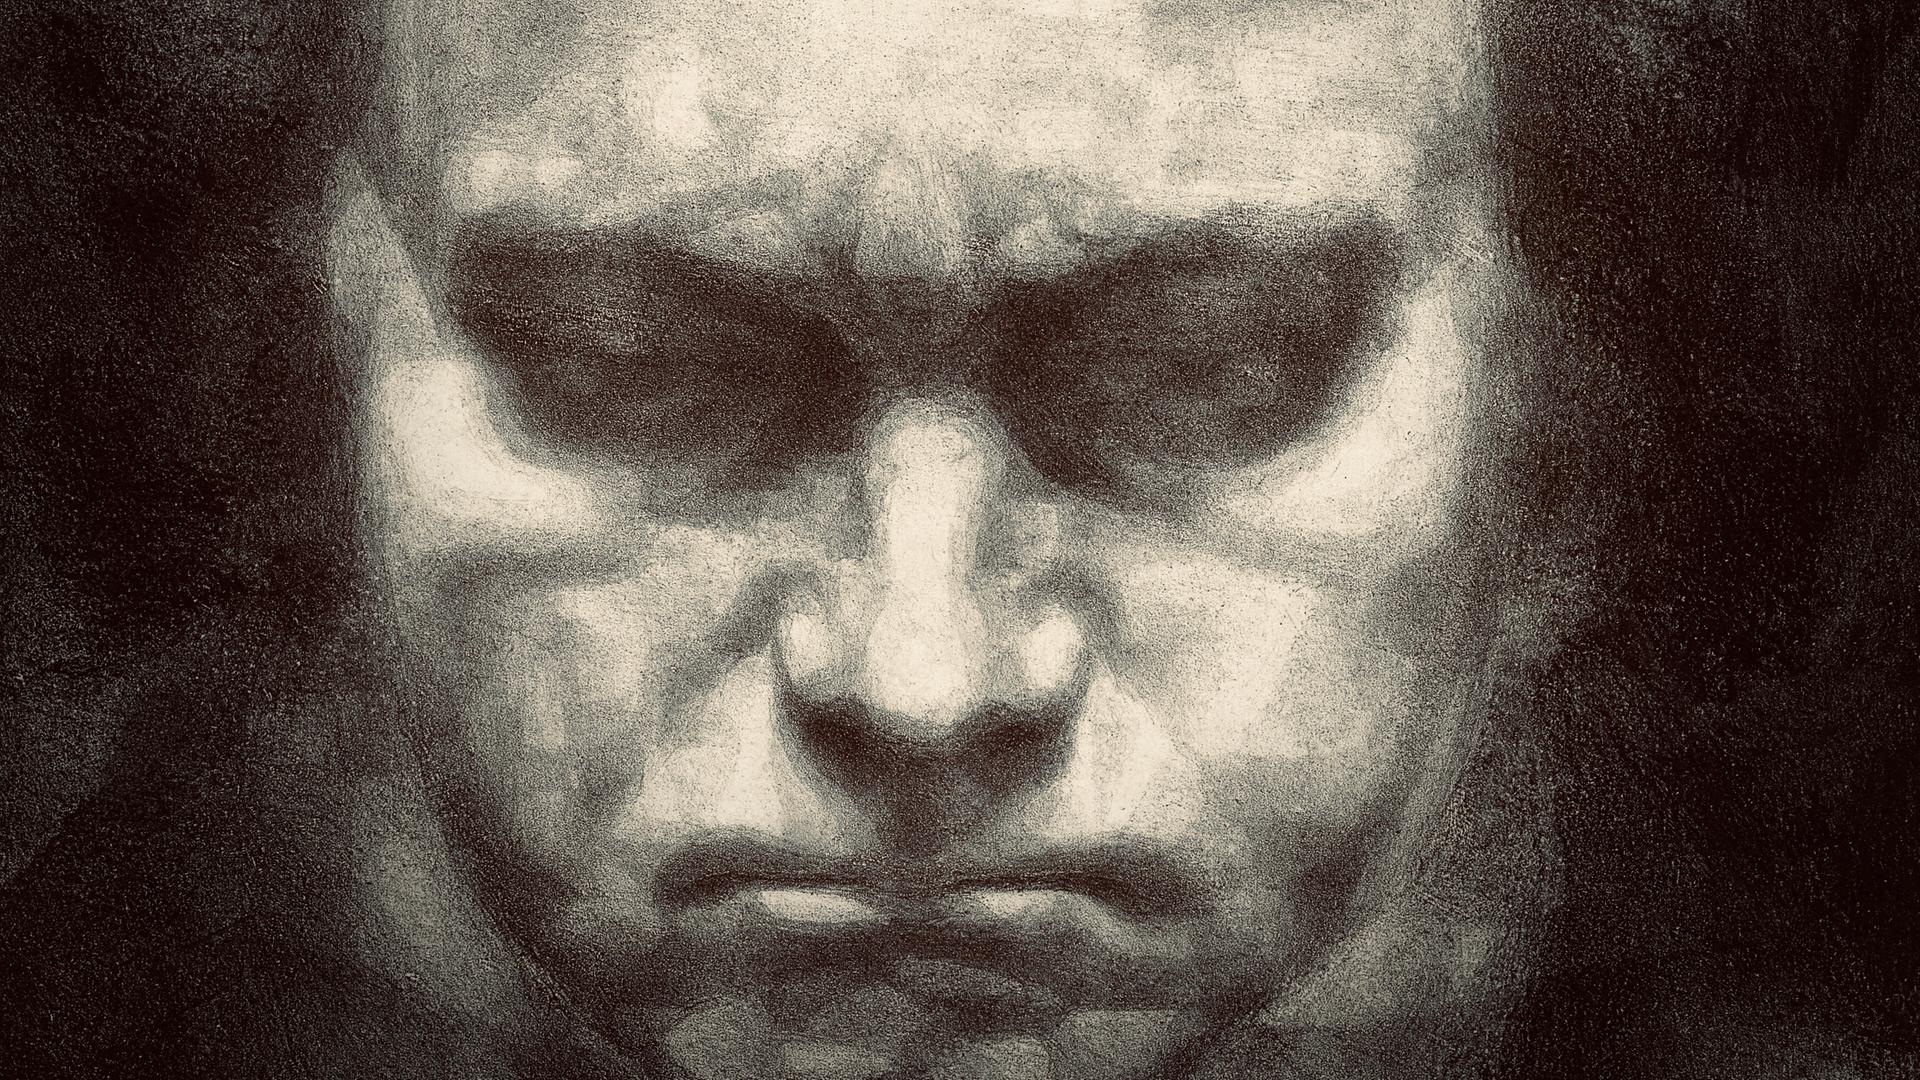 Porträtzeichnung Ludwig van Beethovens  nach Jan Fekkes, wie er finster nach unten schaut.